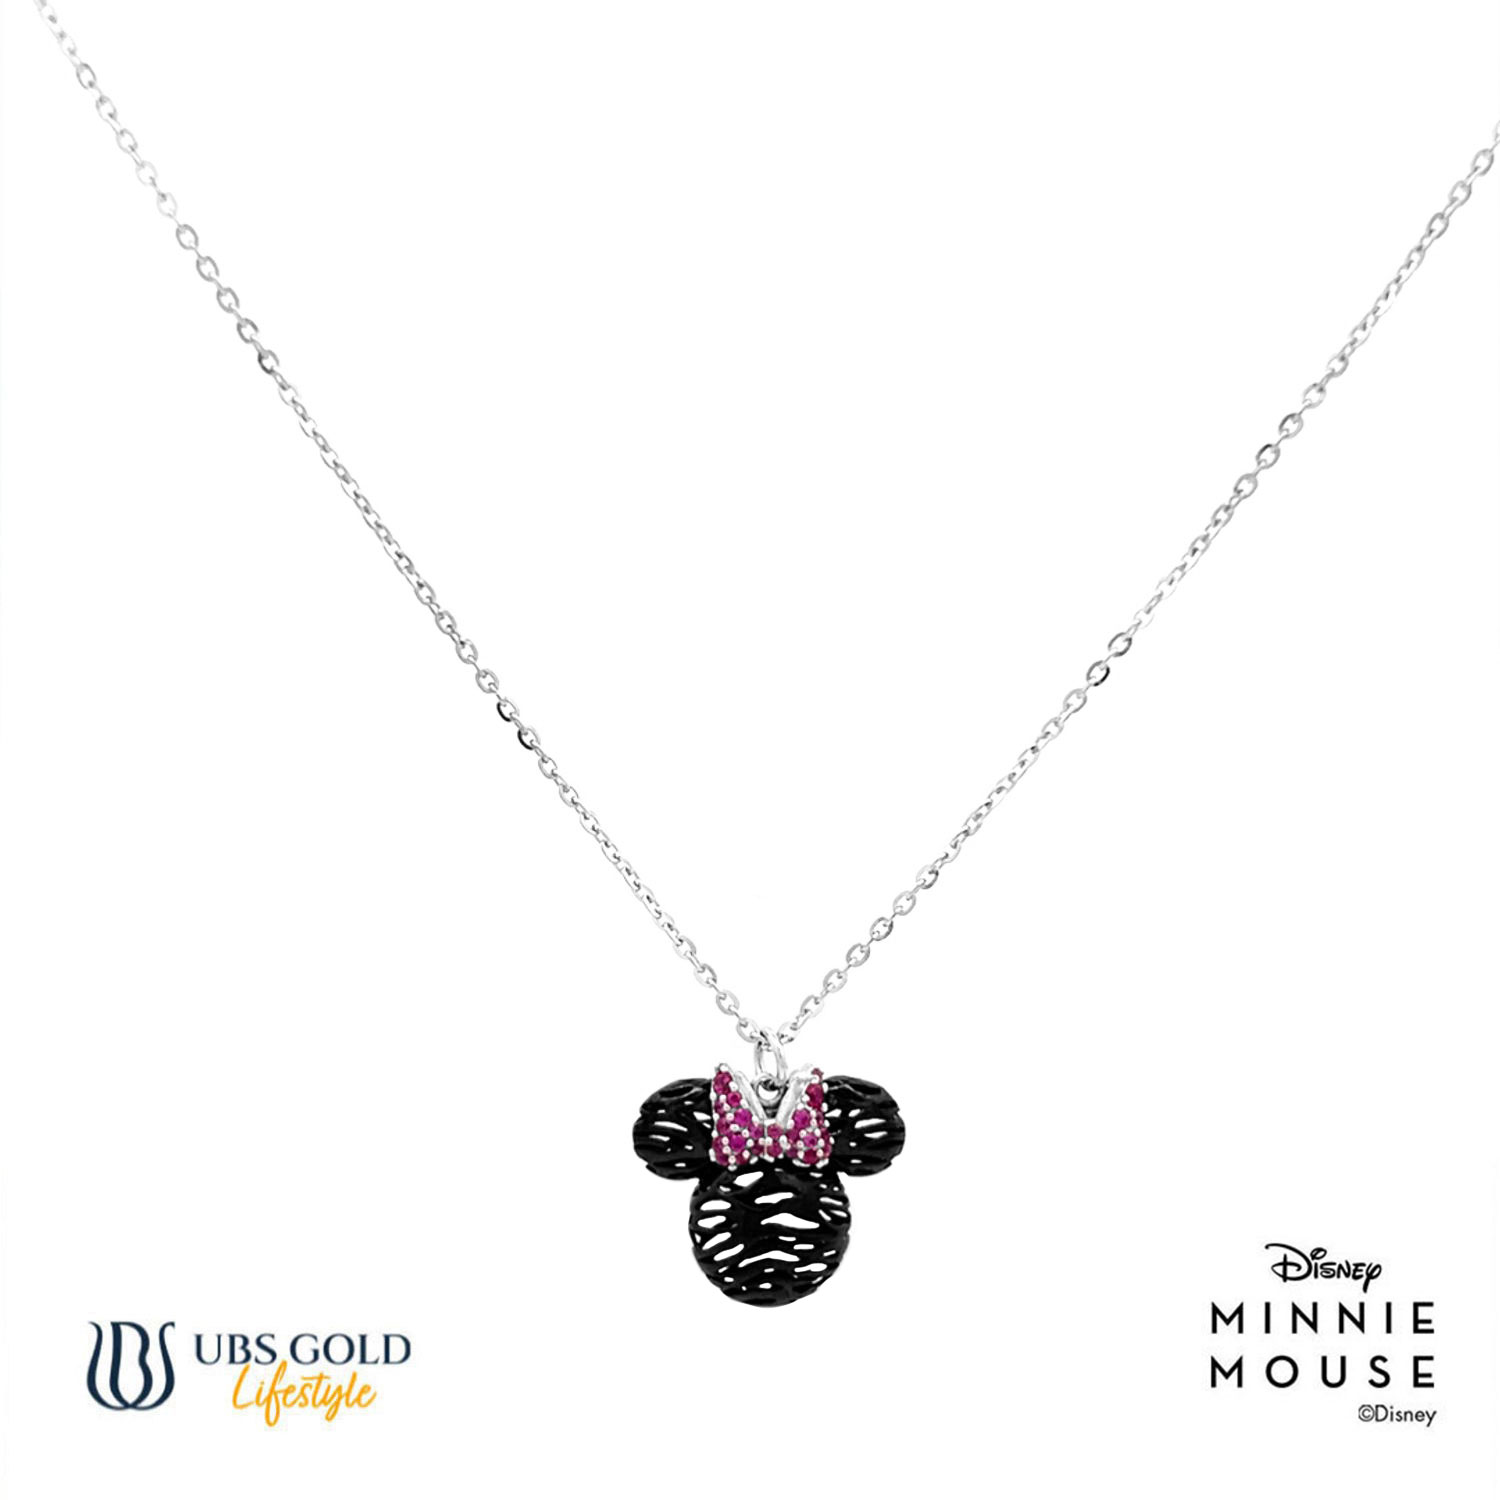 UBS Gold Kalung Emas Disney Minnie Mouse - Kky0469B - 17K